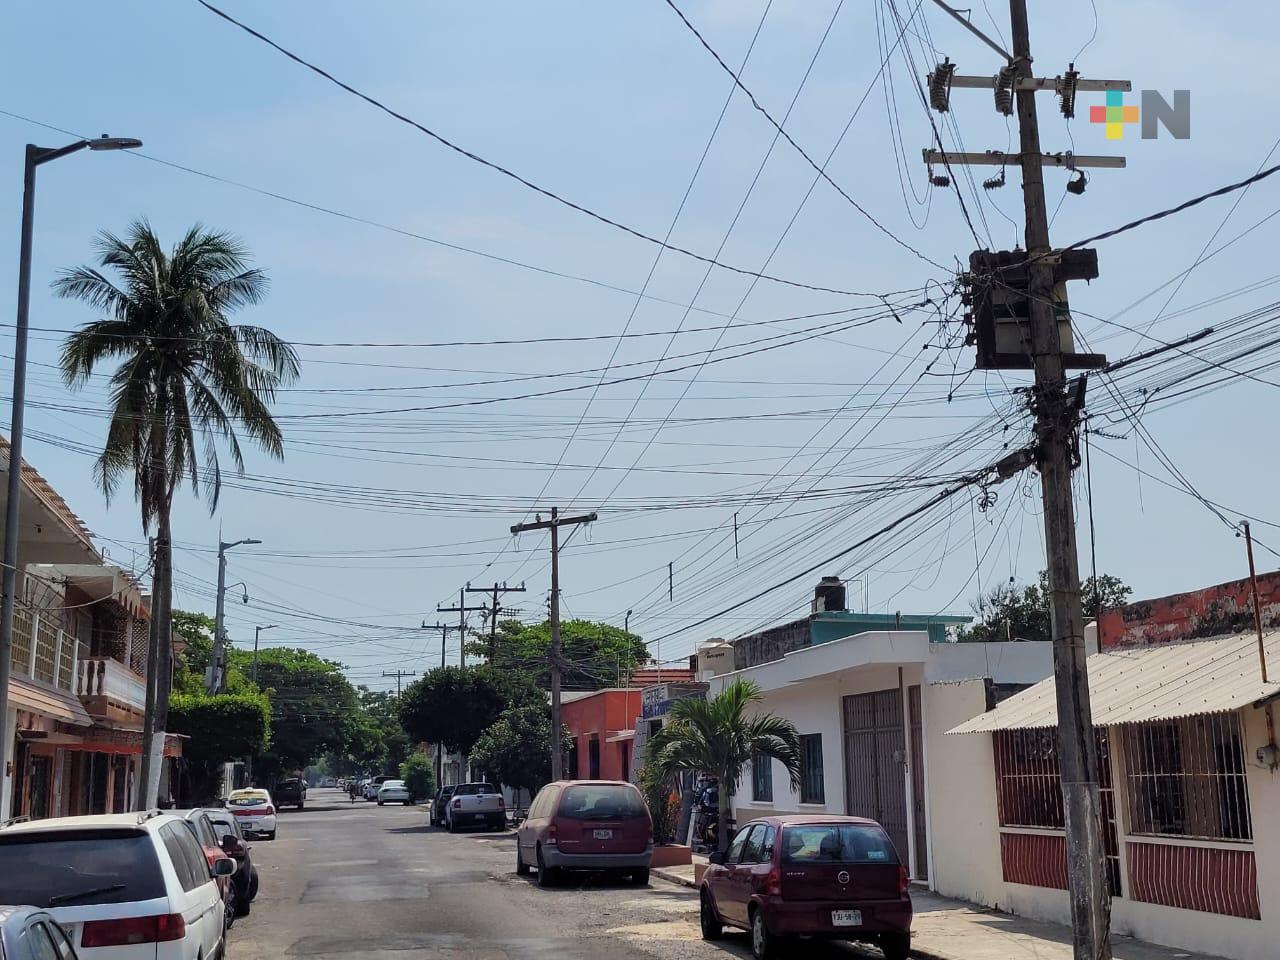 Sufren problemas de delincuencia por falta de alumbrado público en calle de Veracruz puerto